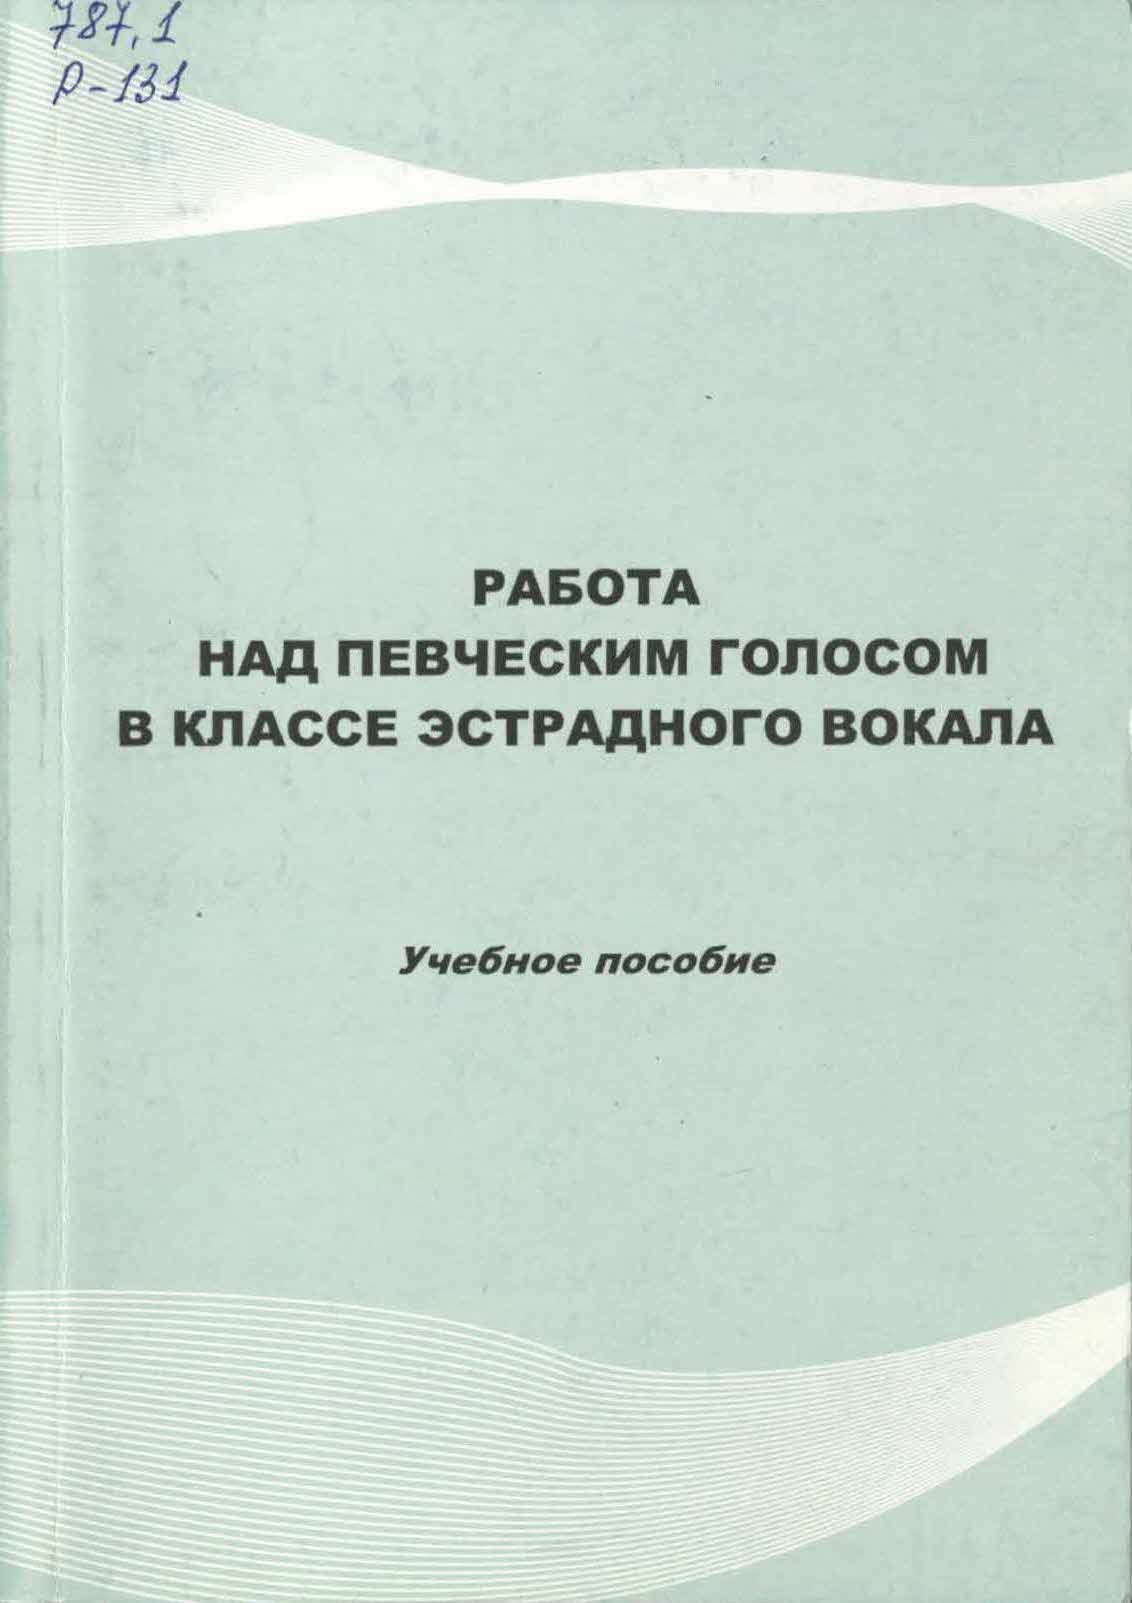 book